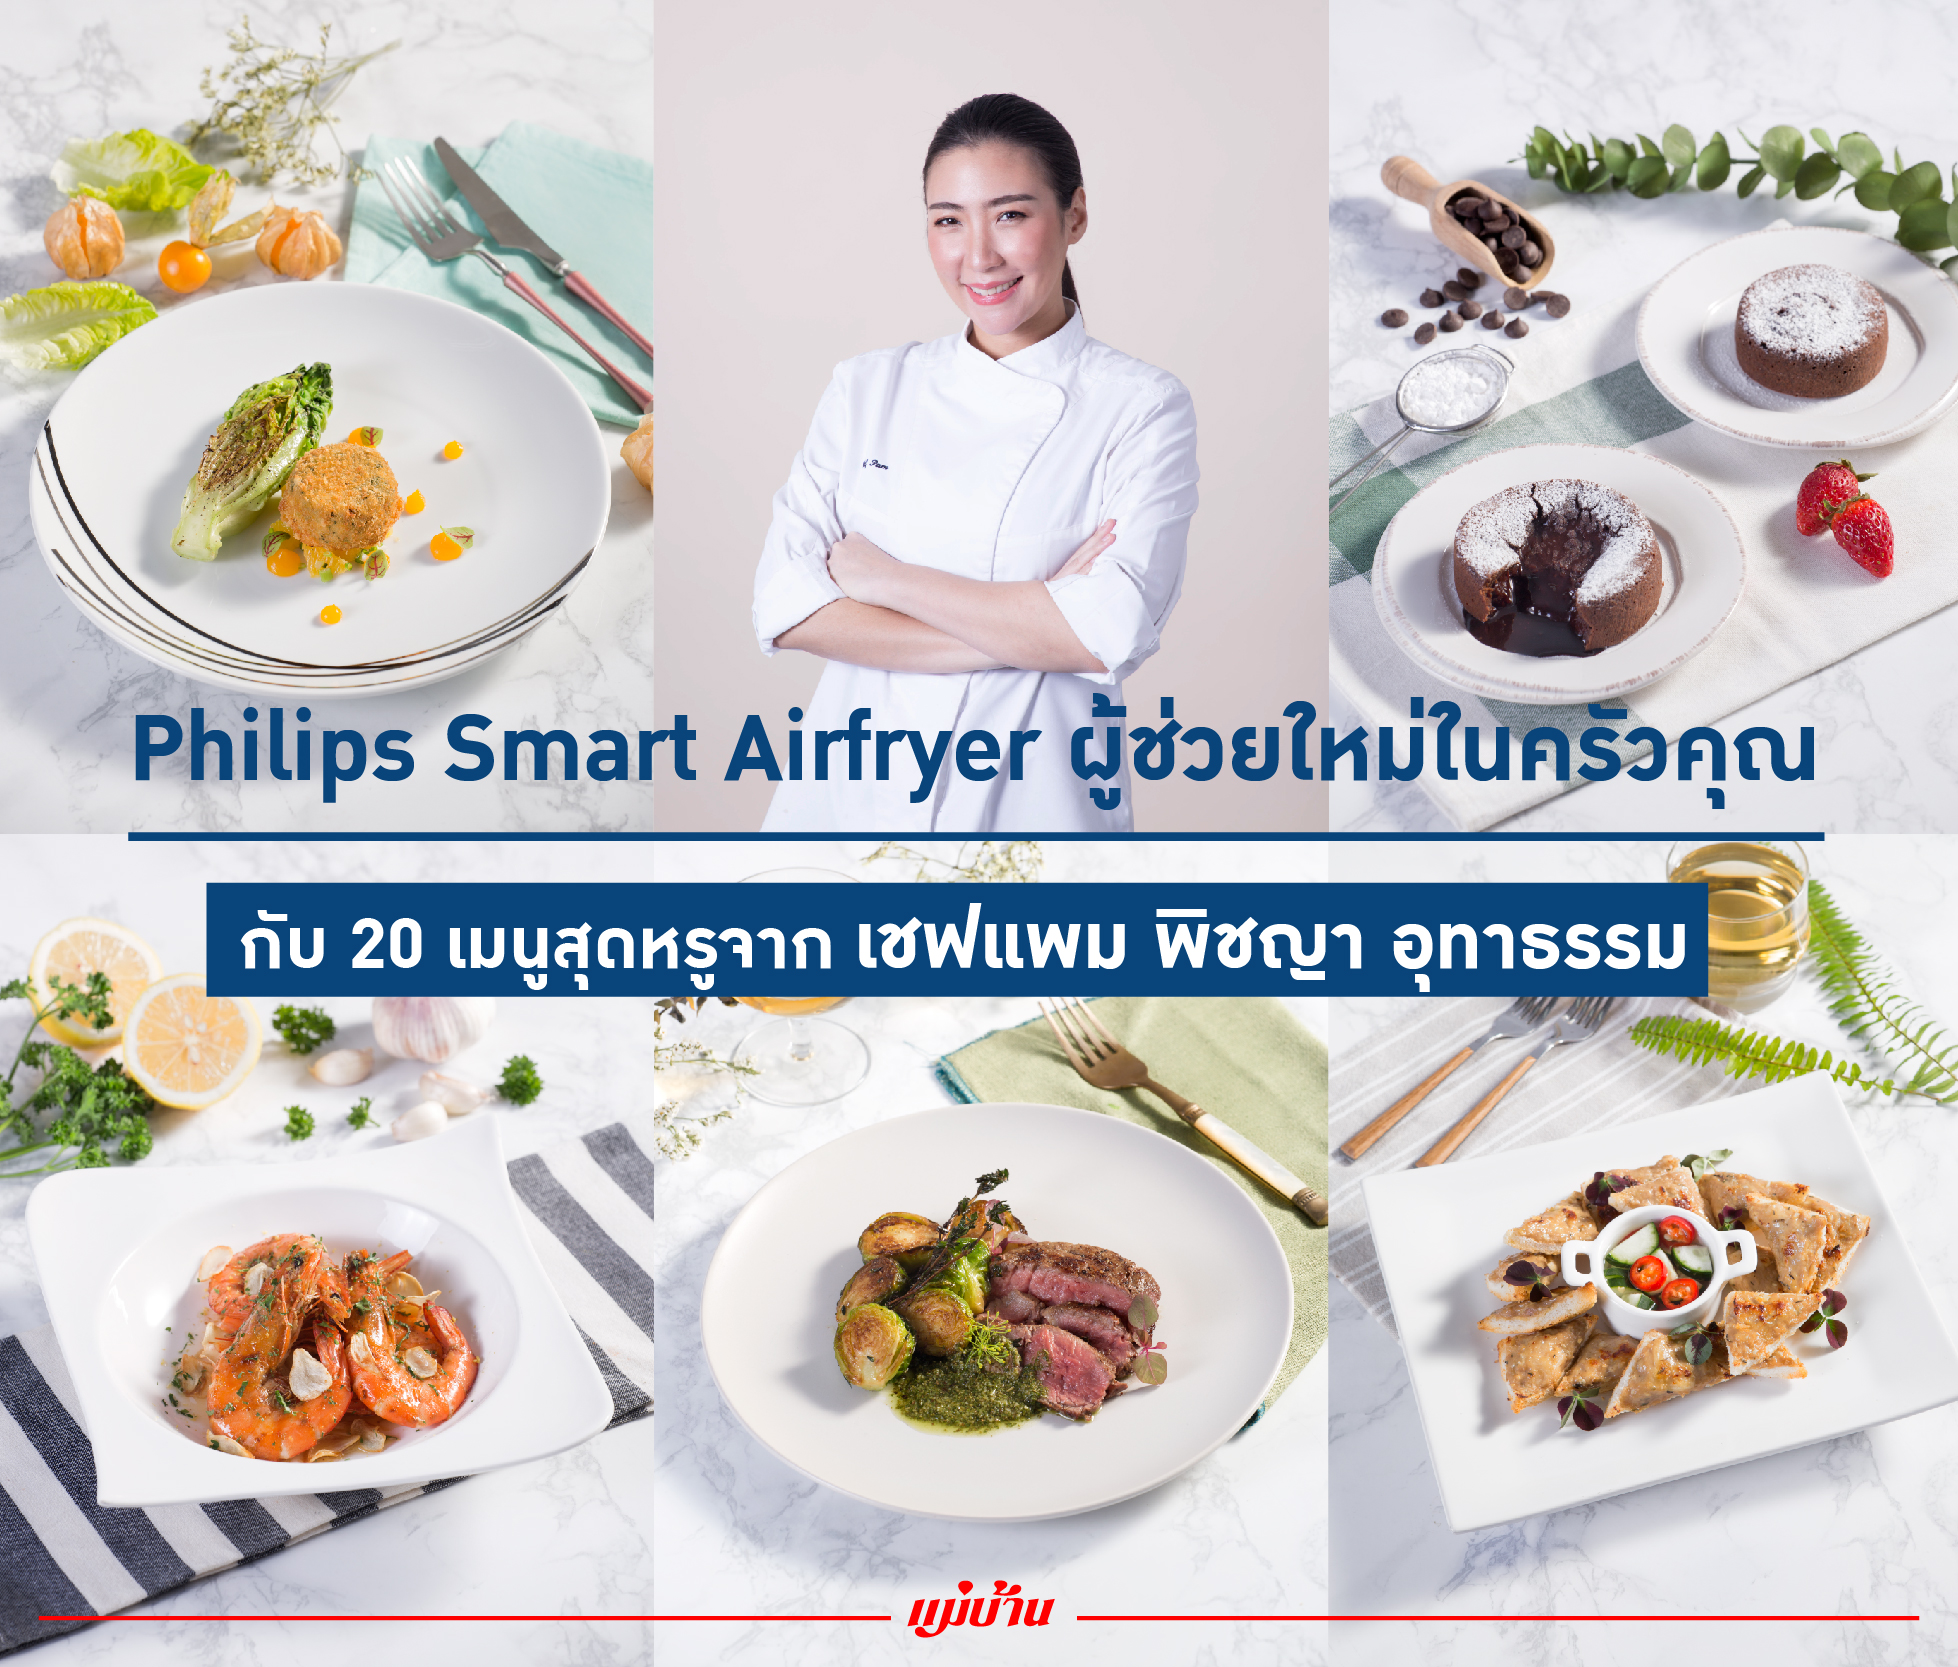 Philips Smart Airfryer ผู้ช่วยใหม่ในครัวคุณ กับ 20 เมนูสุดหรูจากเชฟแพม พิชญา อุทารธรรม สำนักพิมพ์แม่บ้าน